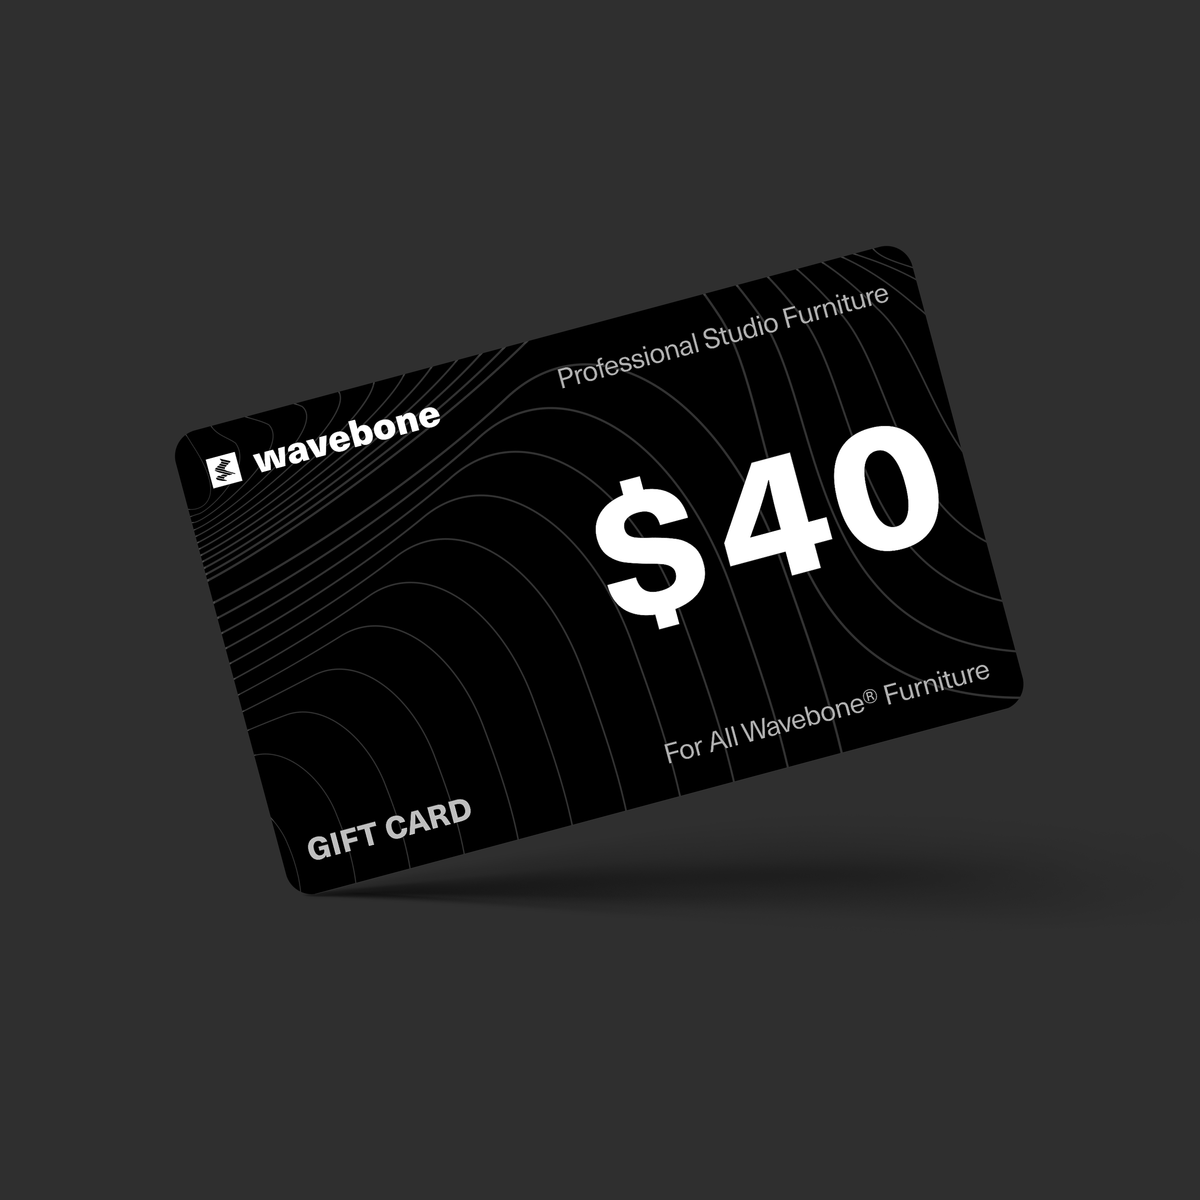 $ 40 | WAVEBONE GIFT CARD